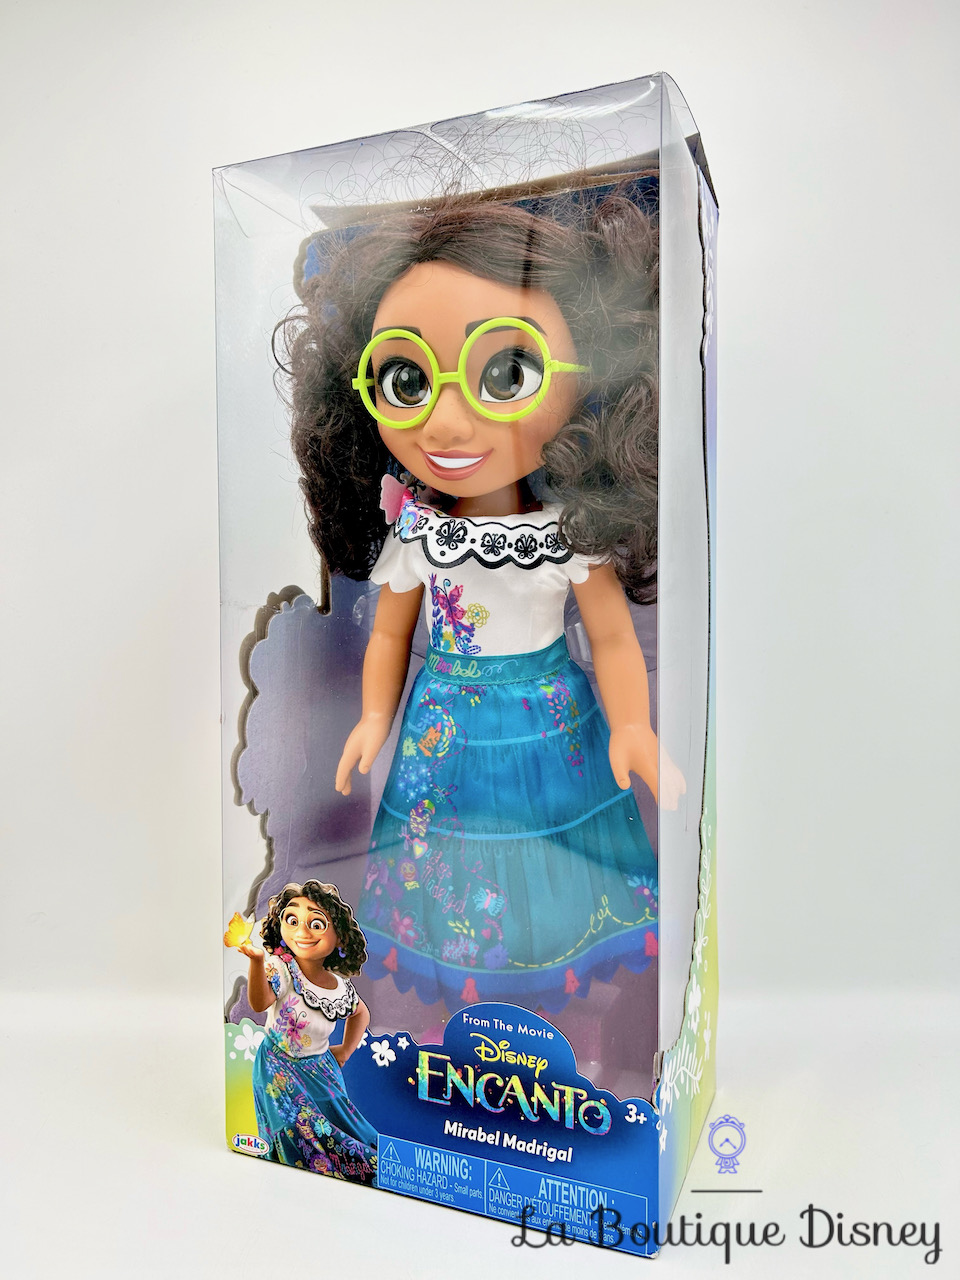 Poupée Vaiana Articulée 38 cm - Disney Princesses Jakks Pacific